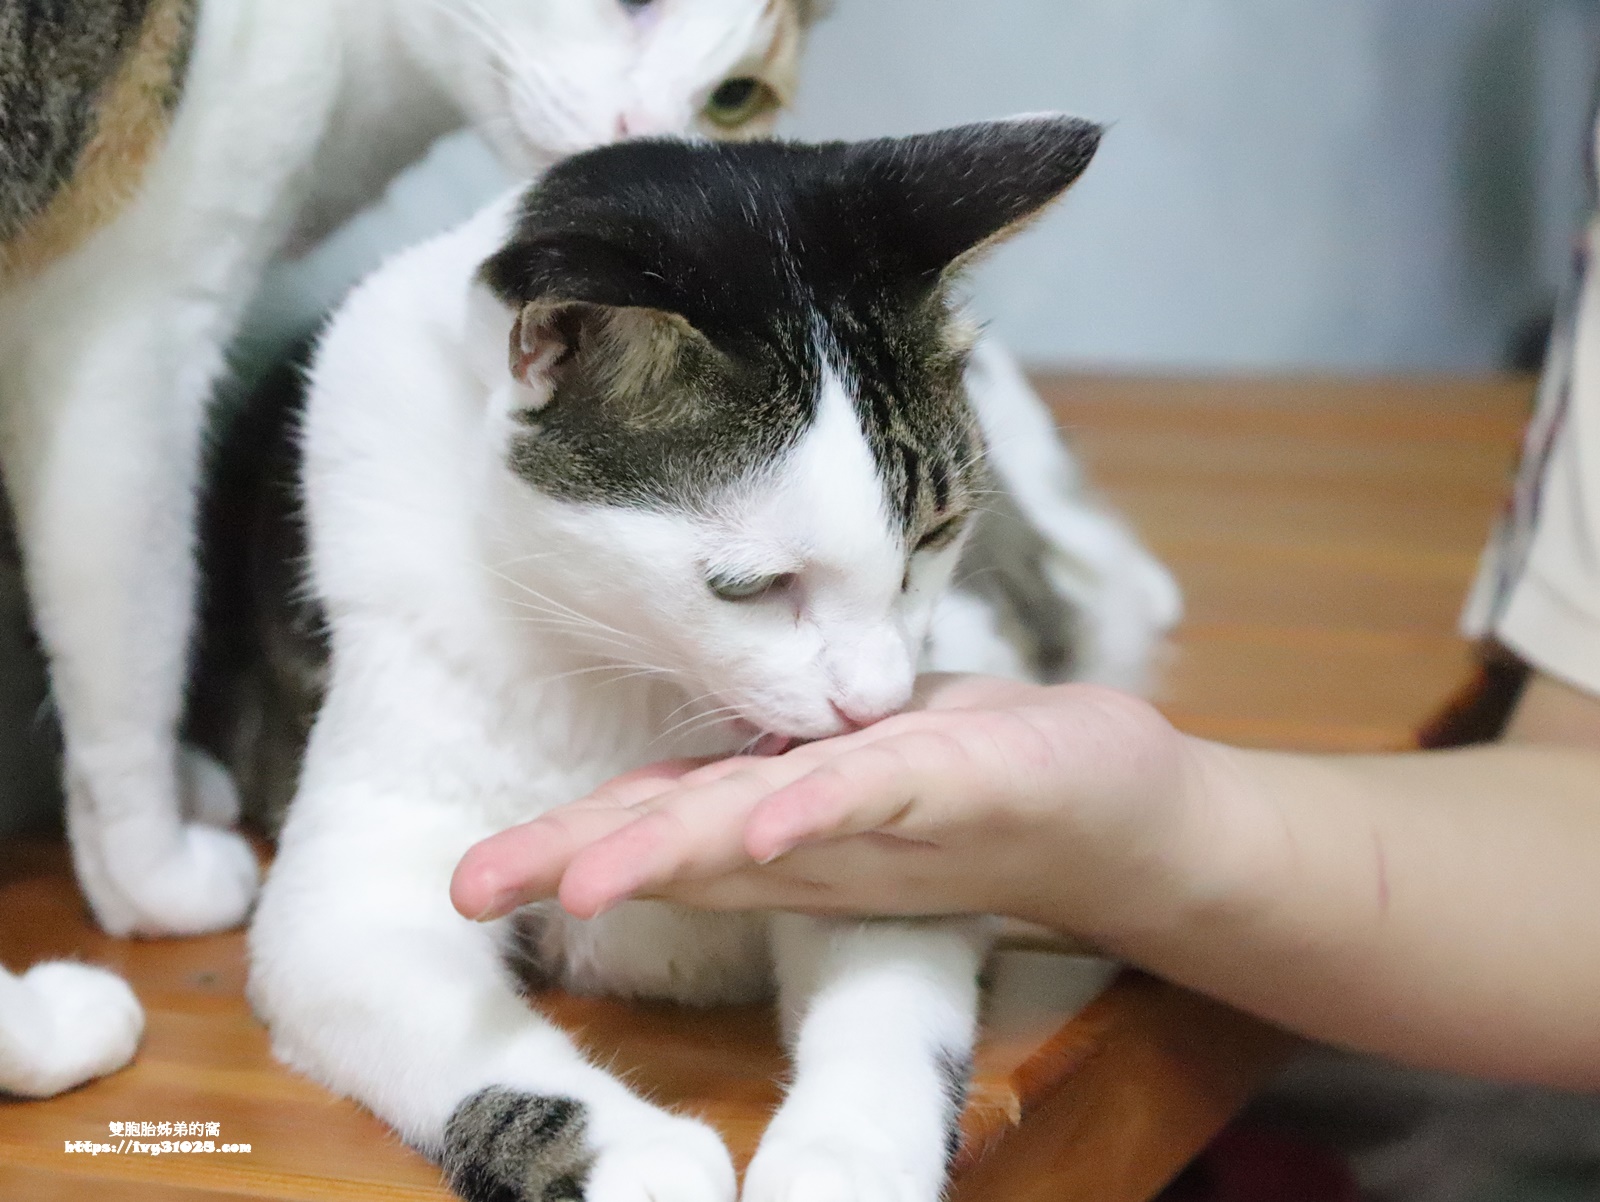 獸醫推薦 - 木入森MORESON固齒麗口滴劑 貓咪最愛的口腔護理小幫手